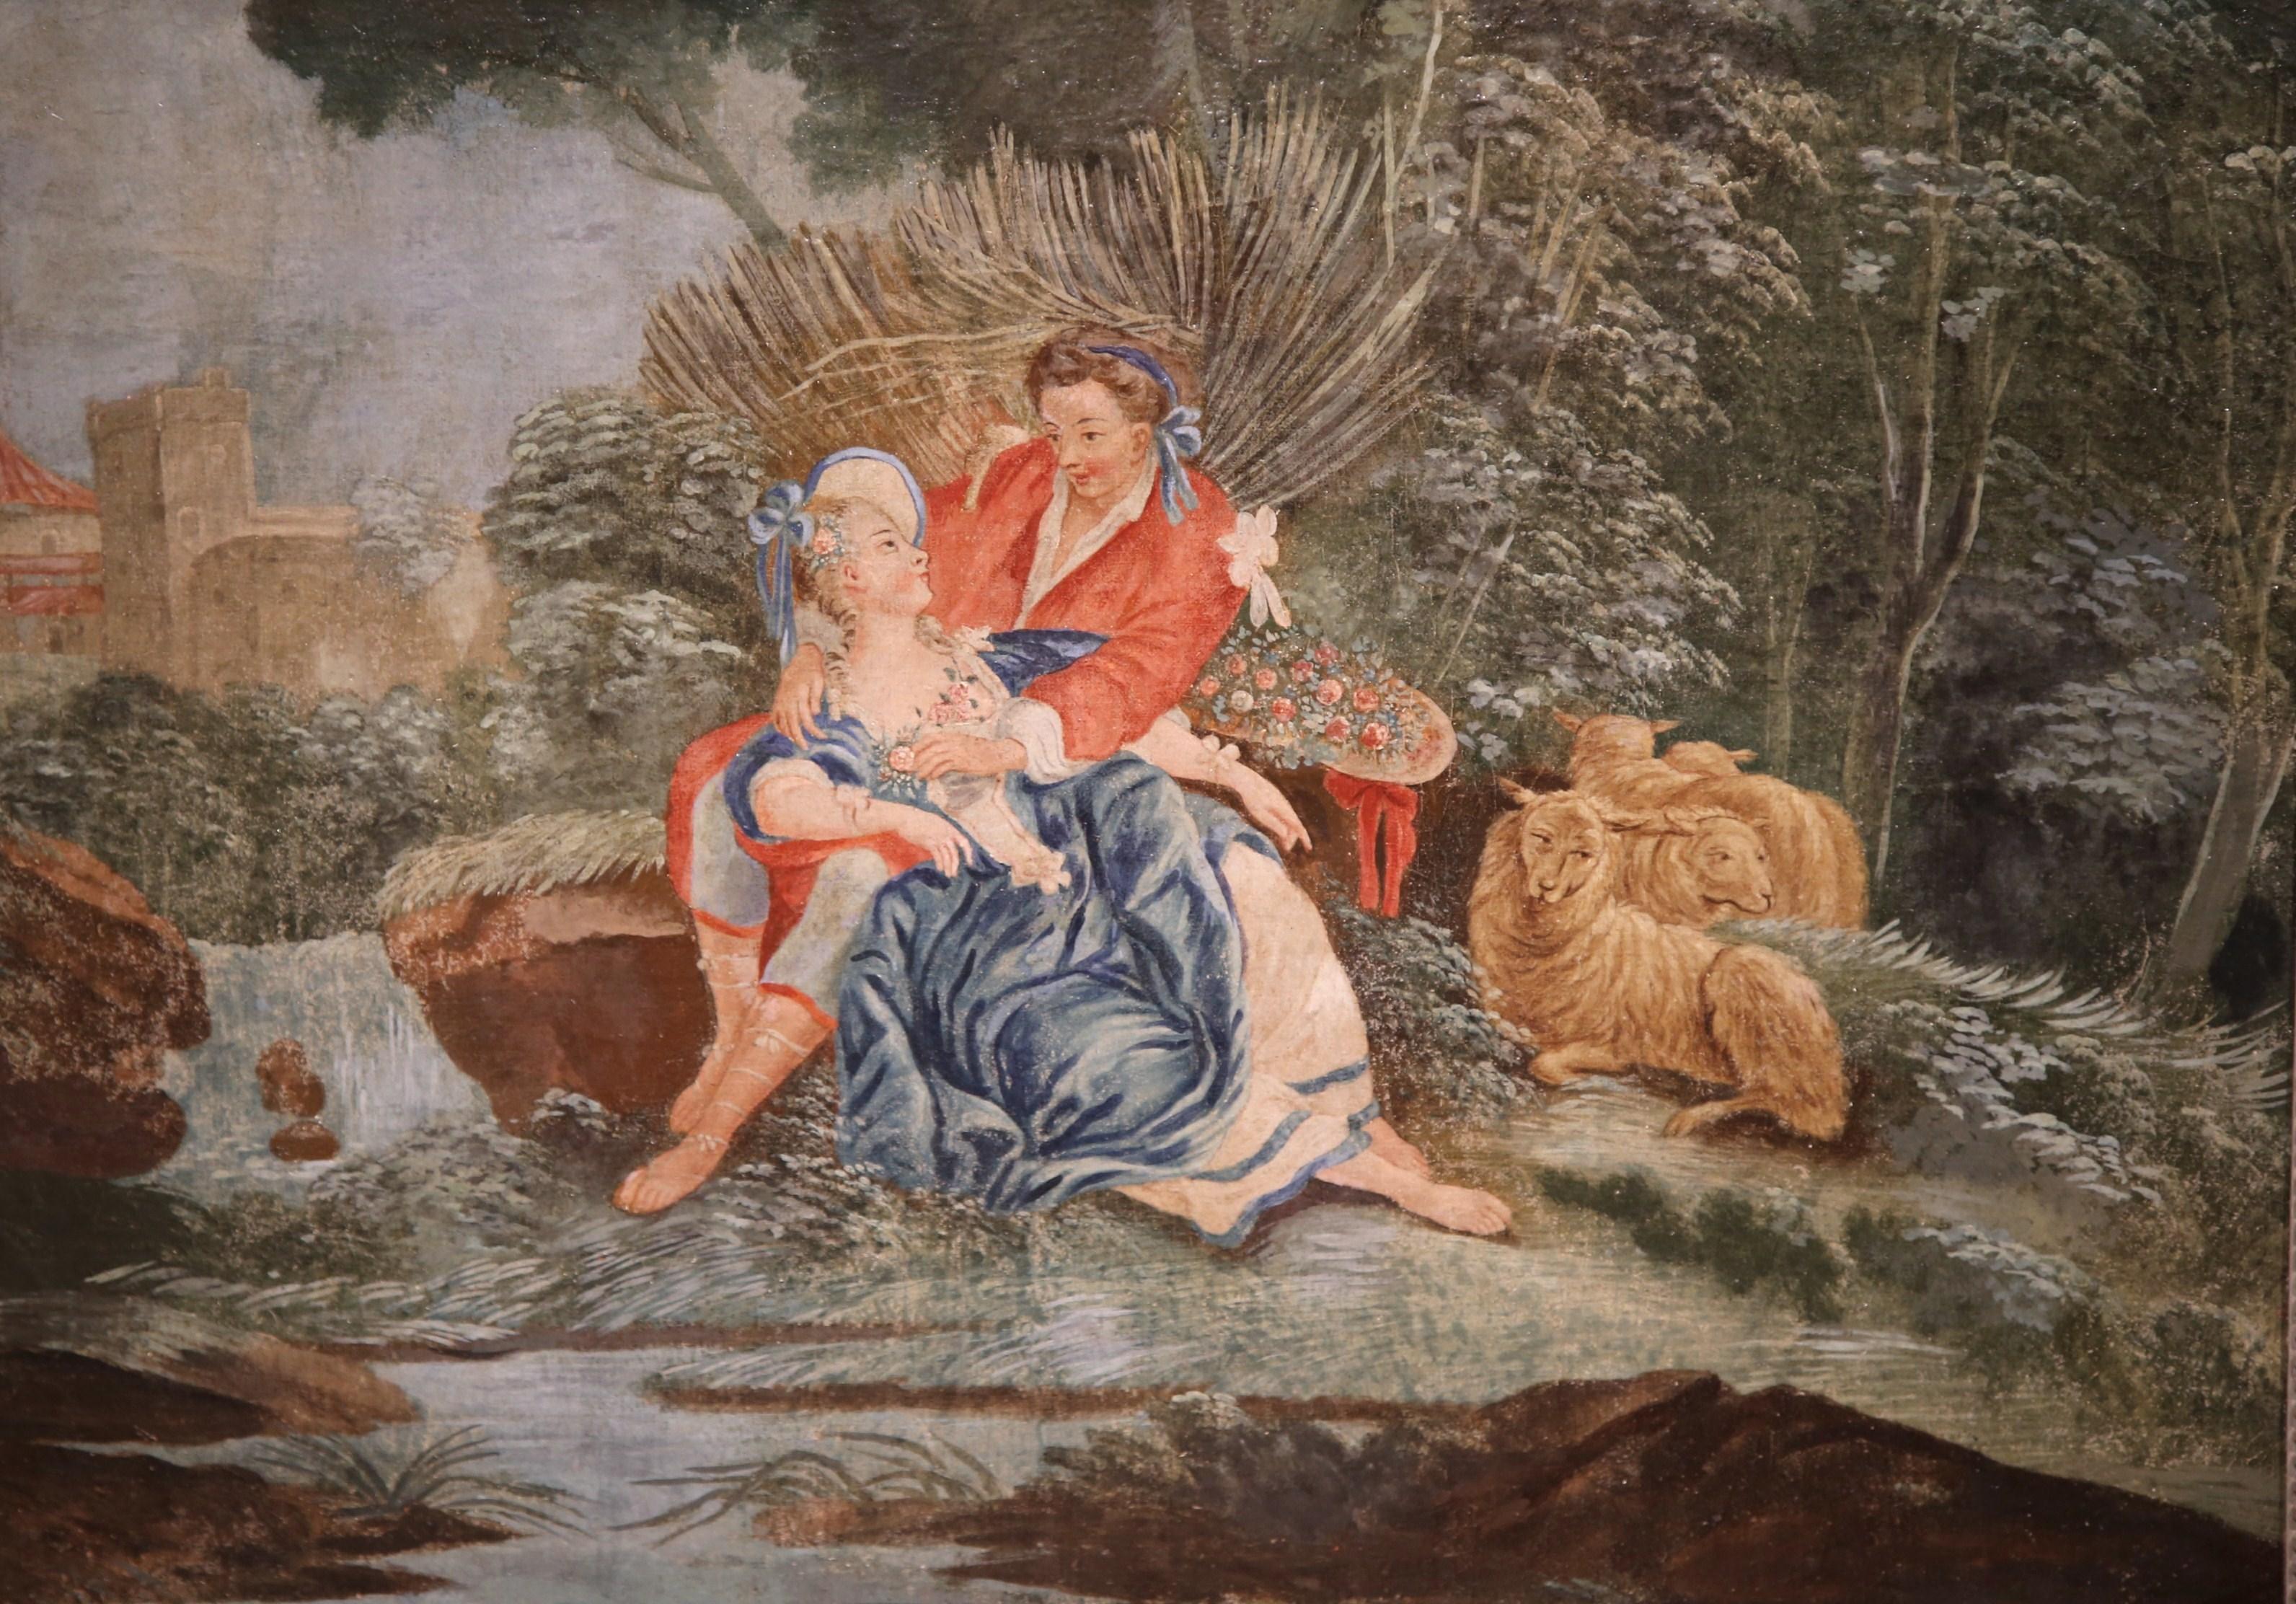 Cette élégante peinture ancienne sur toile a été créée en France, vers 1760. La composition colorée présente une scène romantique avec un gentleman courtisant une femme dans un parc, et des moutons et du feuillage en arrière-plan ; les personnages